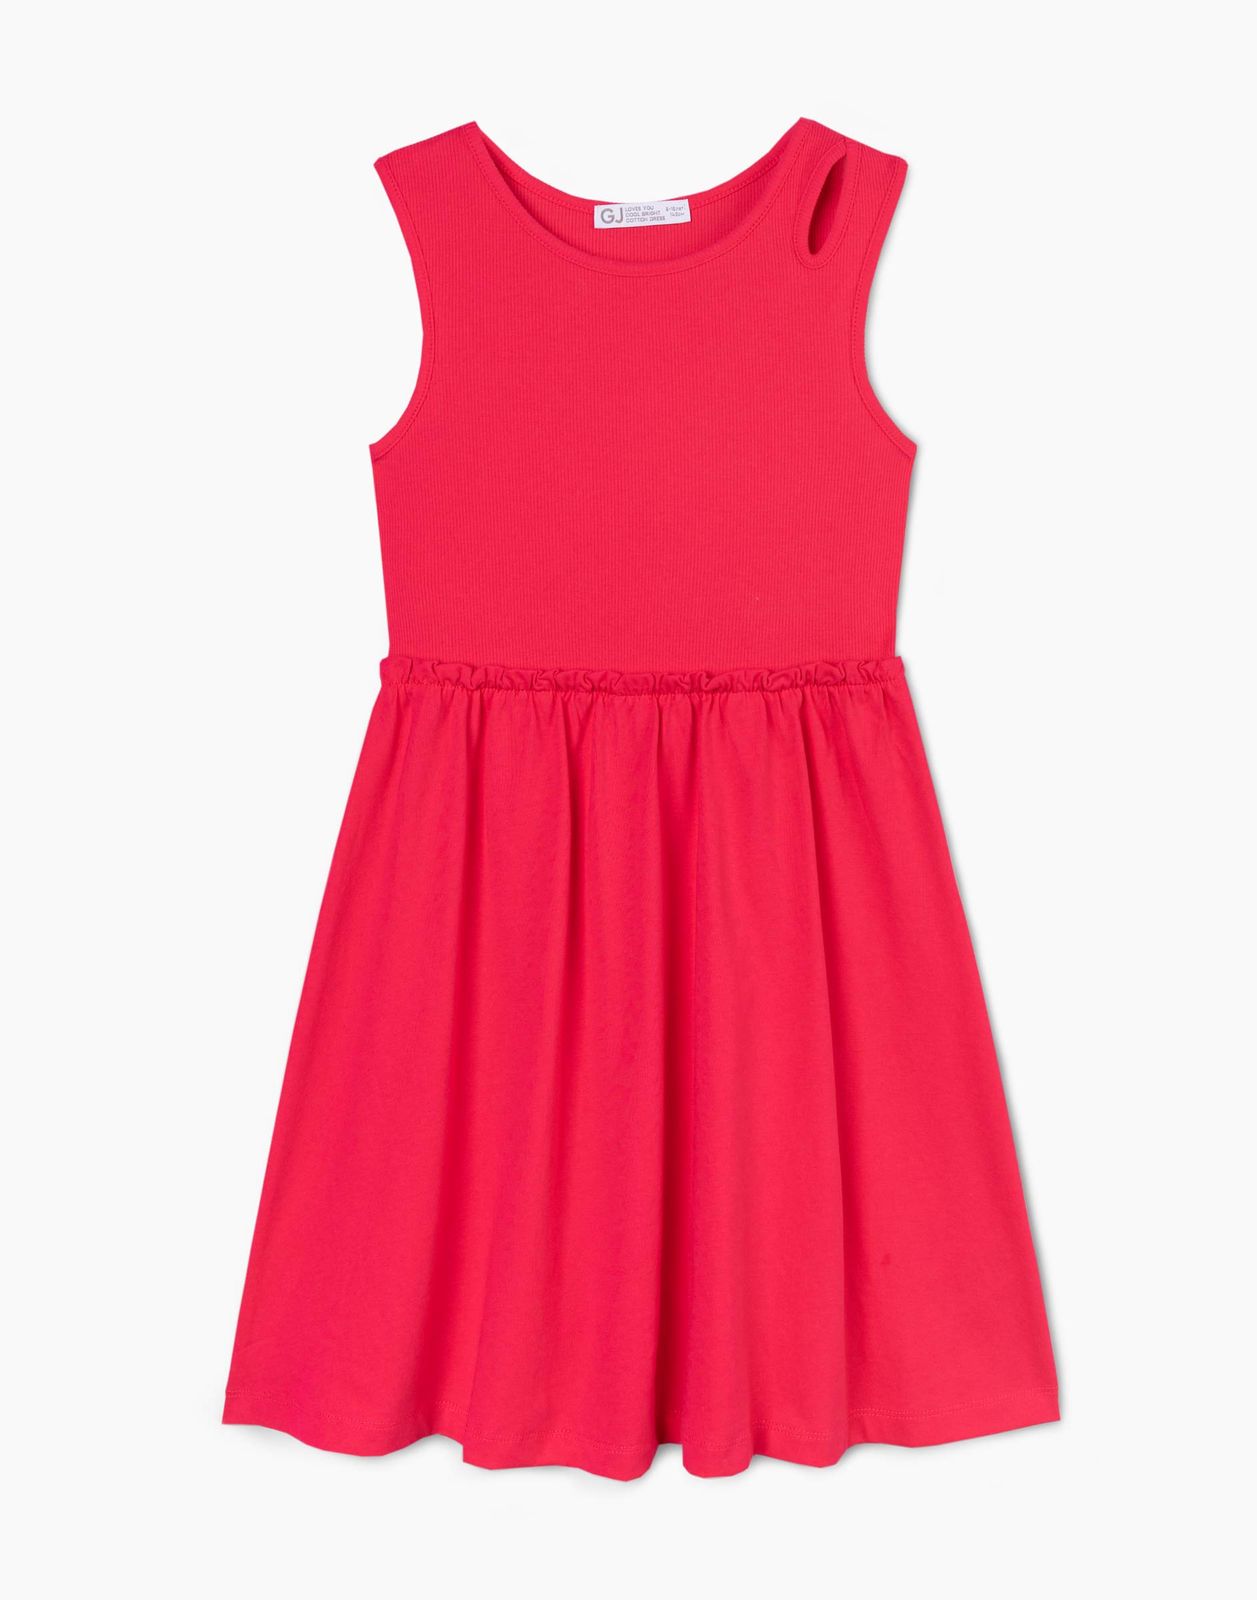 Платье для девочки Gloria Jeans GDR028570 розовый 4-6л/116